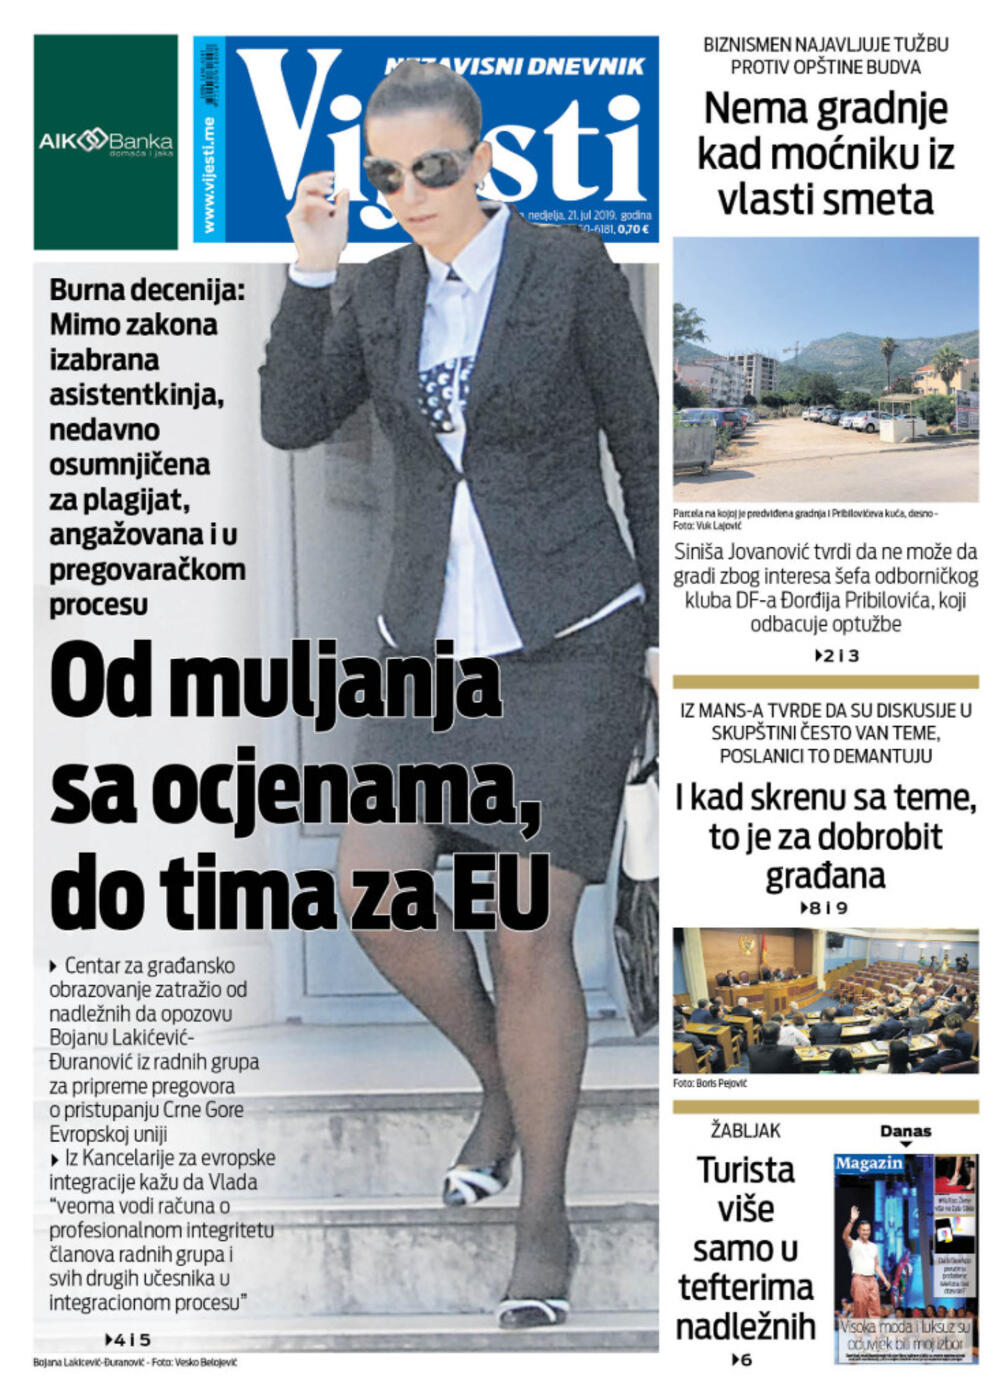 Naslovna strana "Vijesti" za 21. jul